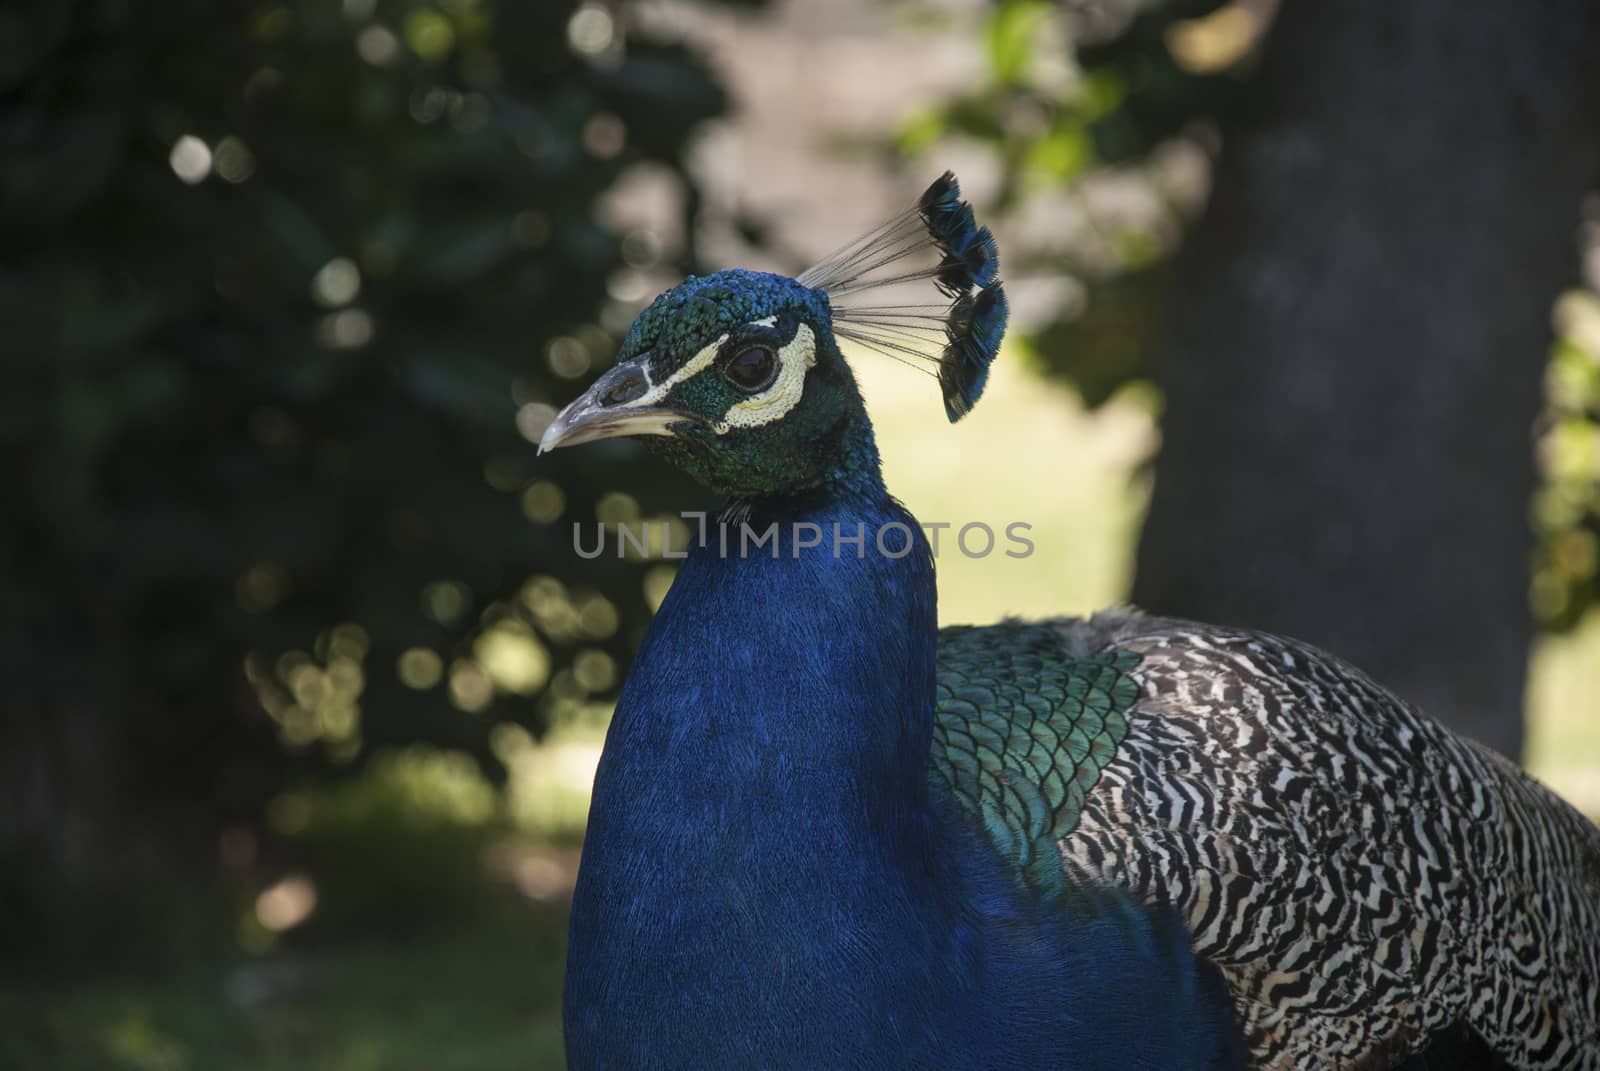 A peacock walks around a garden, South Africa